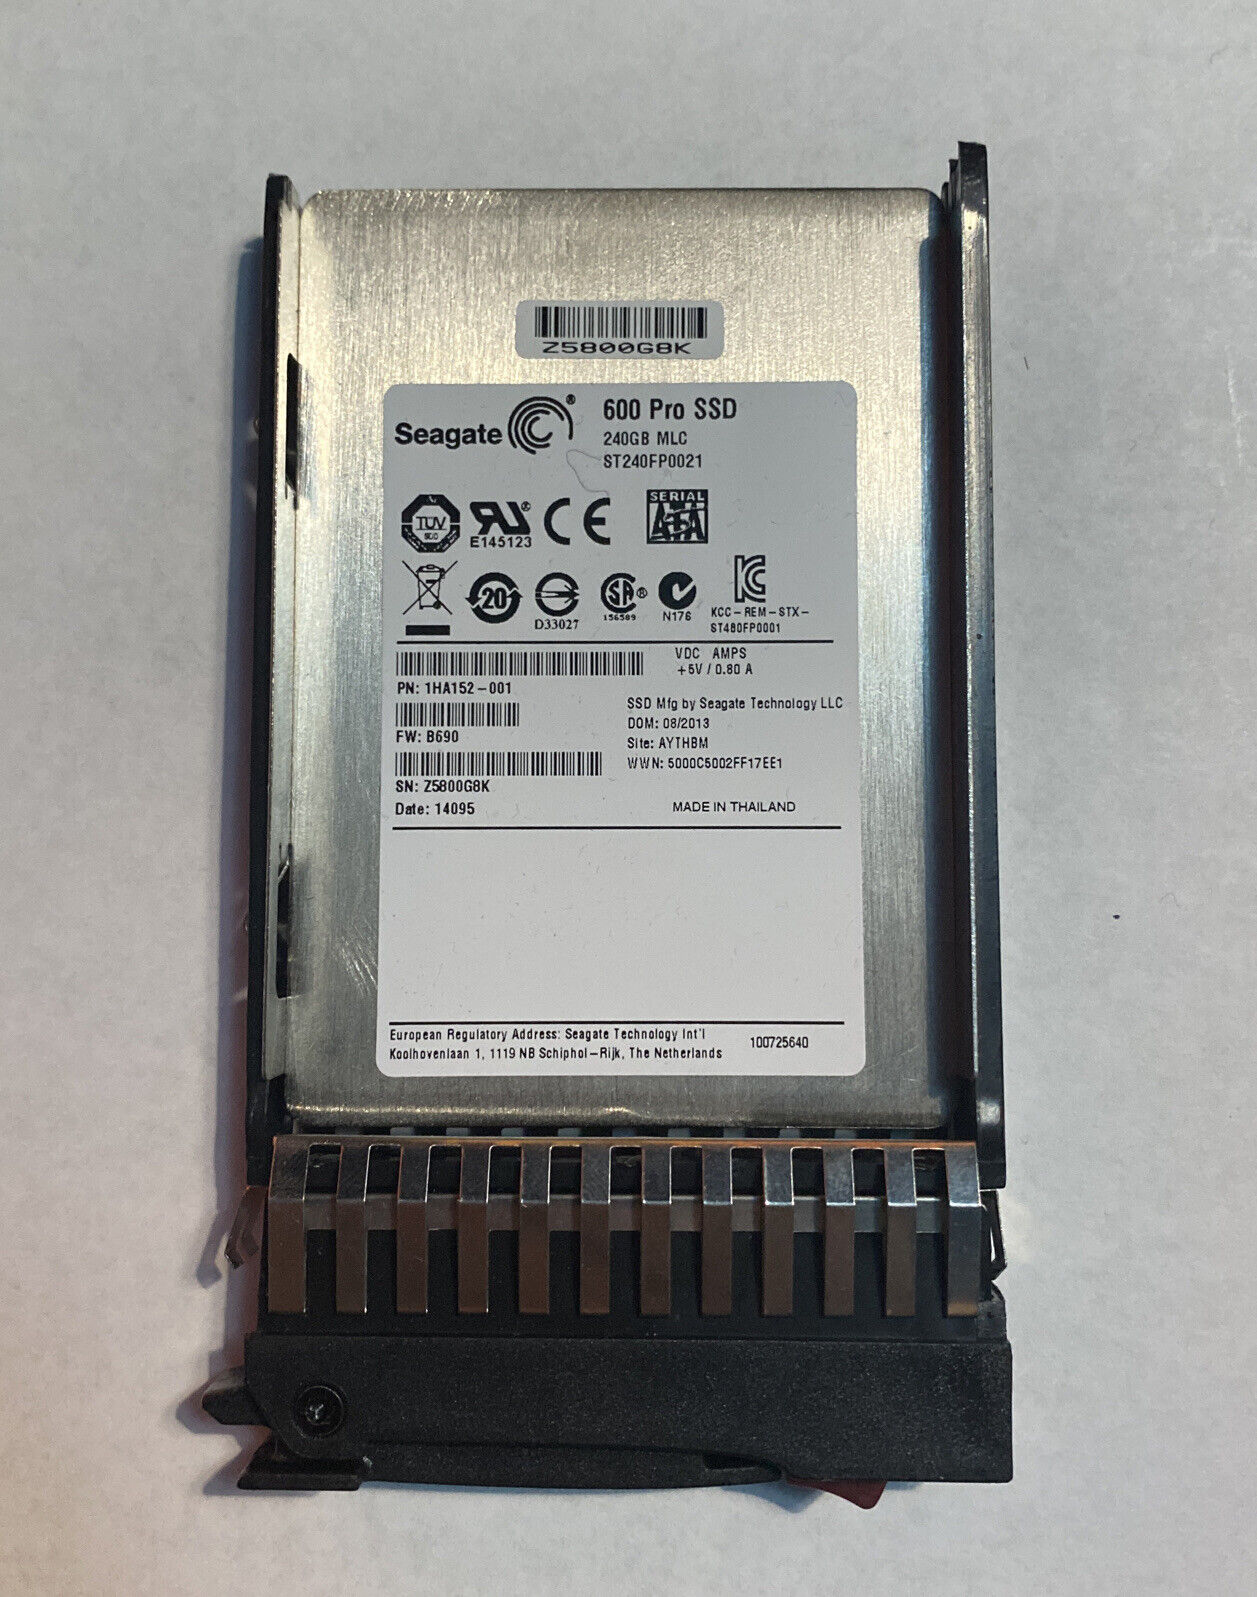 Seagate ST240FN0021 600 Pro 240Gb MLC 2.5 inch SATA Enterprise SSD